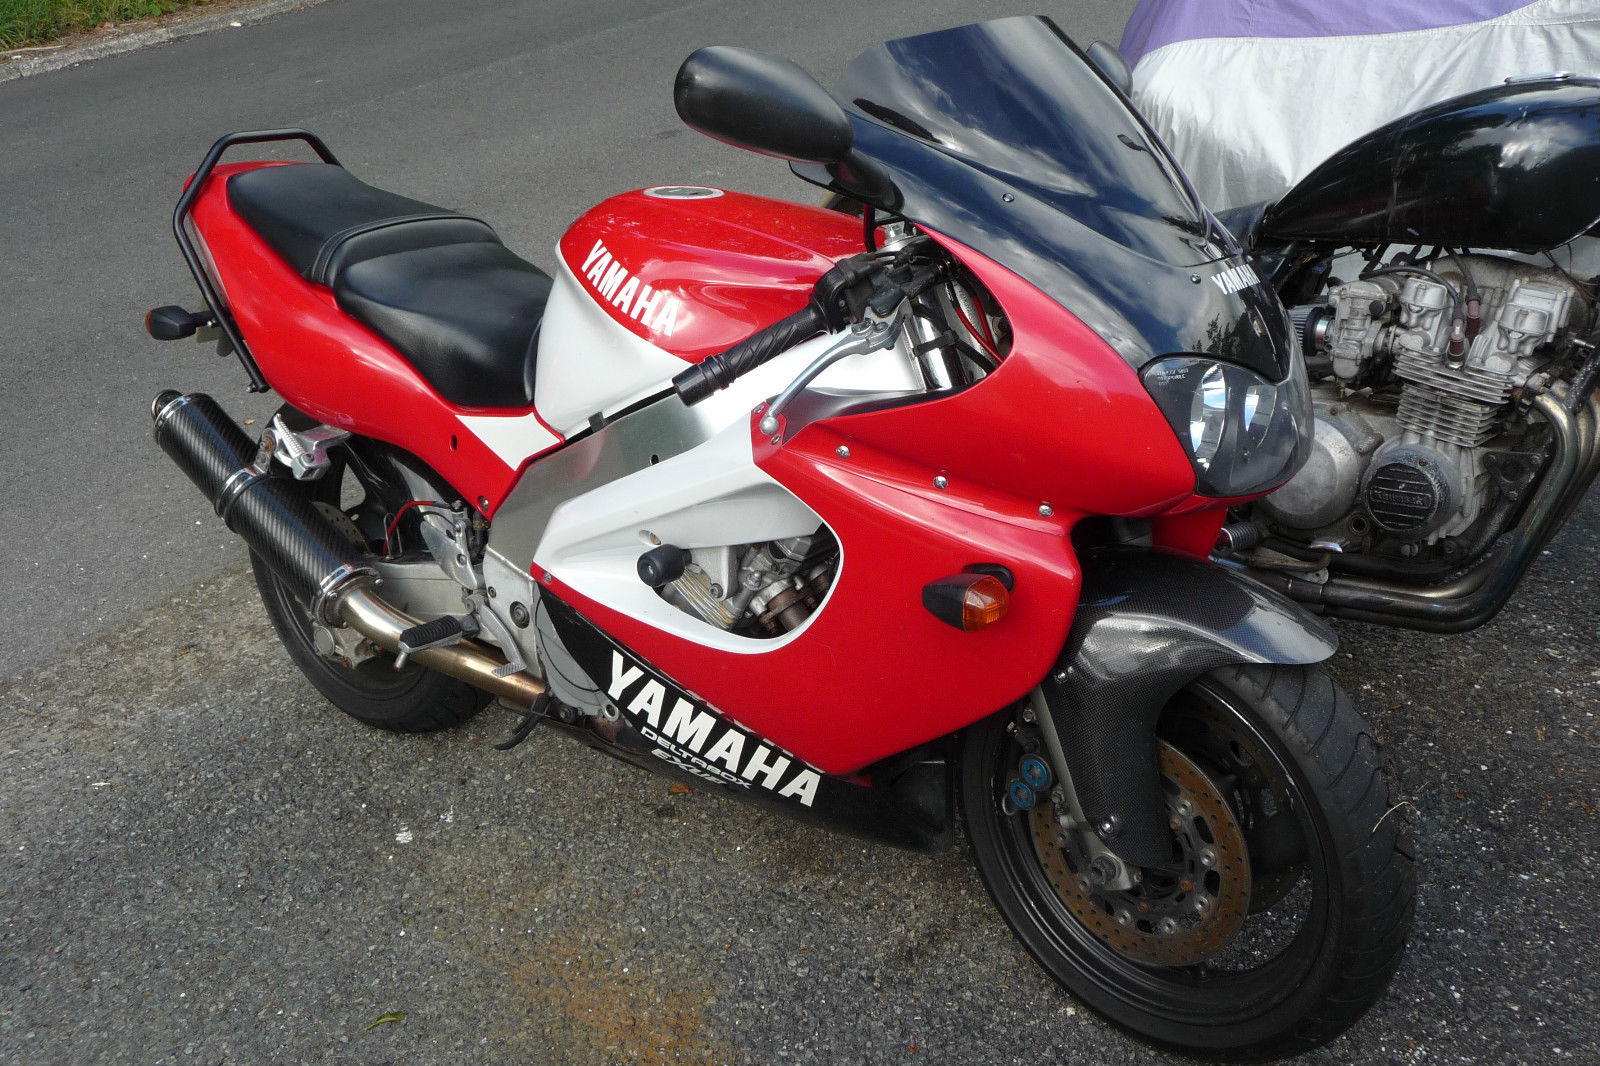 Тест-драйв мотоцикла Yamaha YZF1000R Thunderace